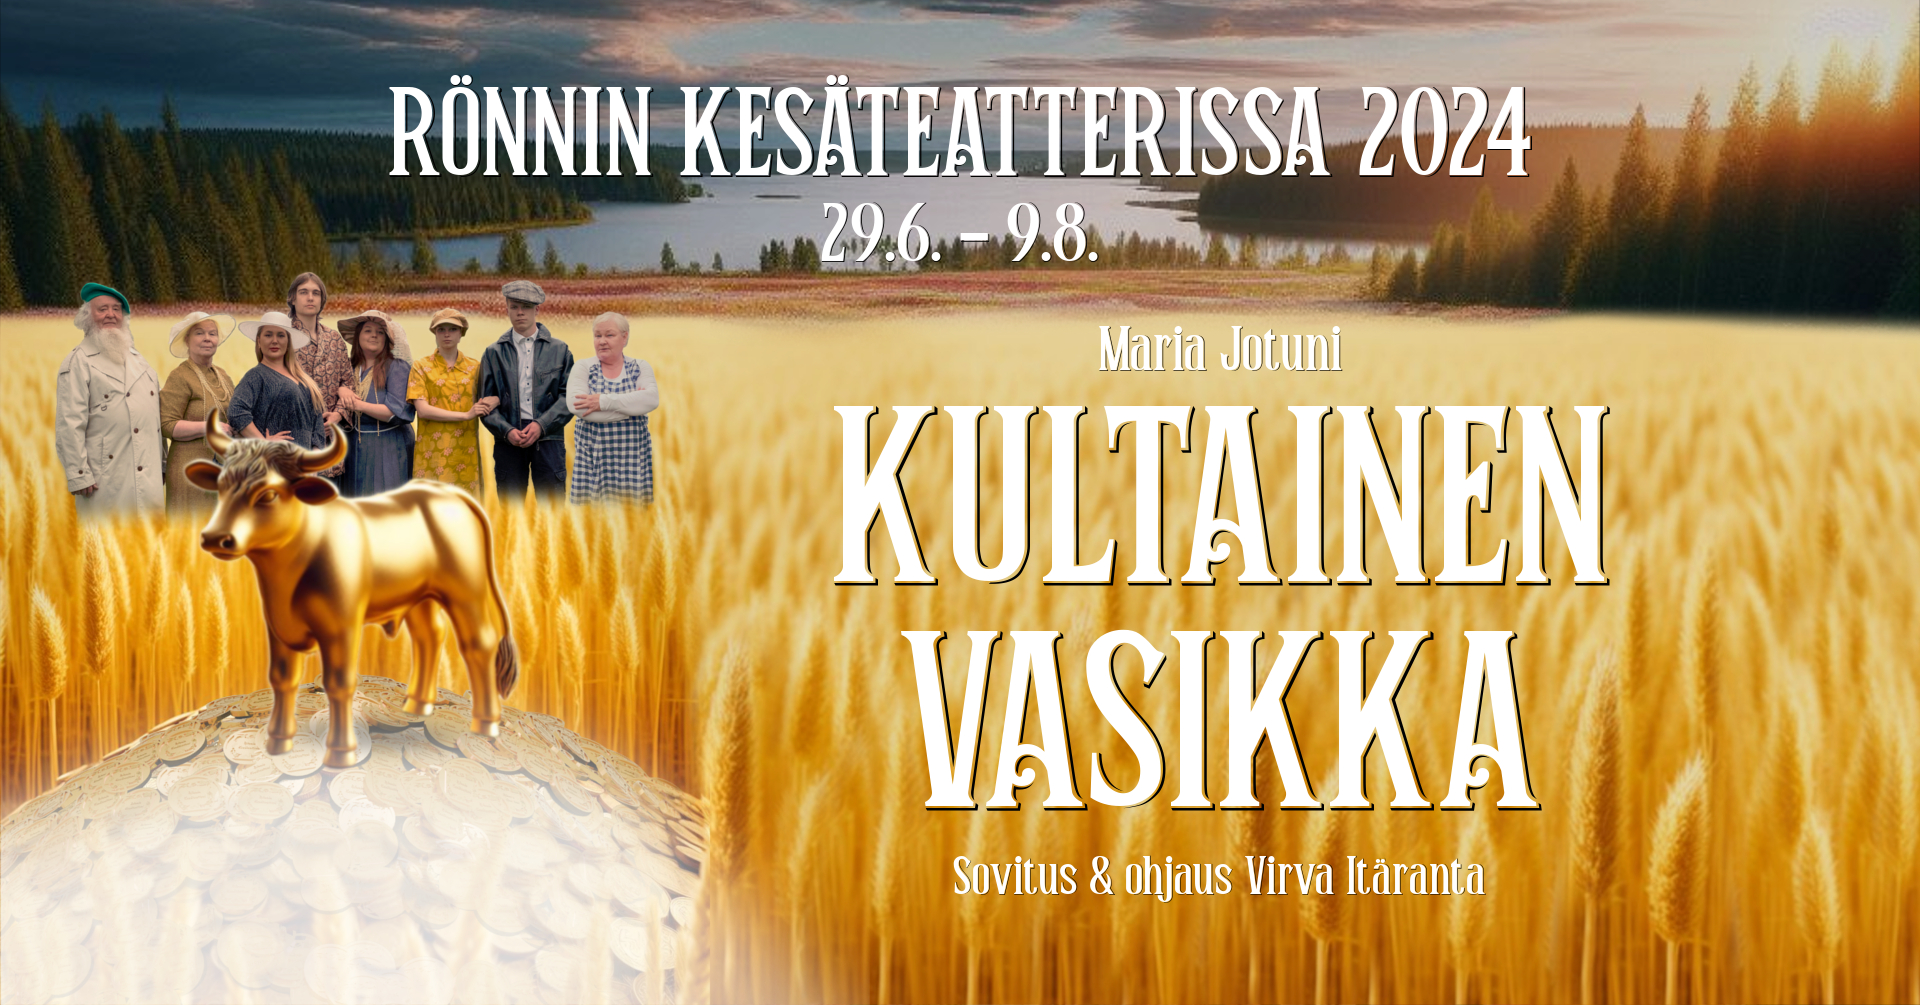 Kultainen Vasikka Banner rönnin kesäteatteri teatteri